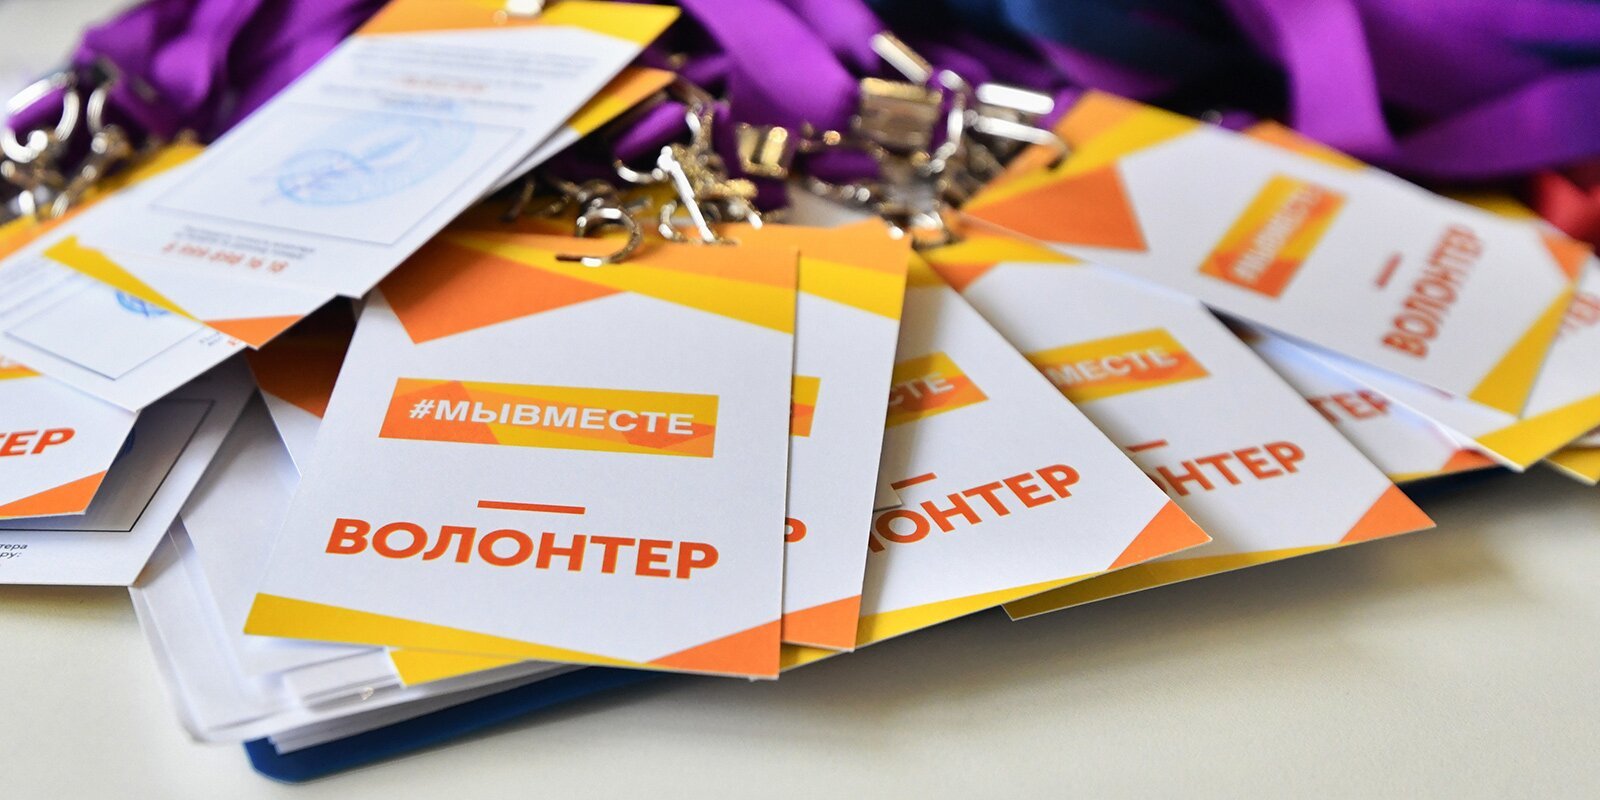 Свыше 108 тысяч активных жителей приняли участие в опросе по поводу волонтерского развития в Москве 